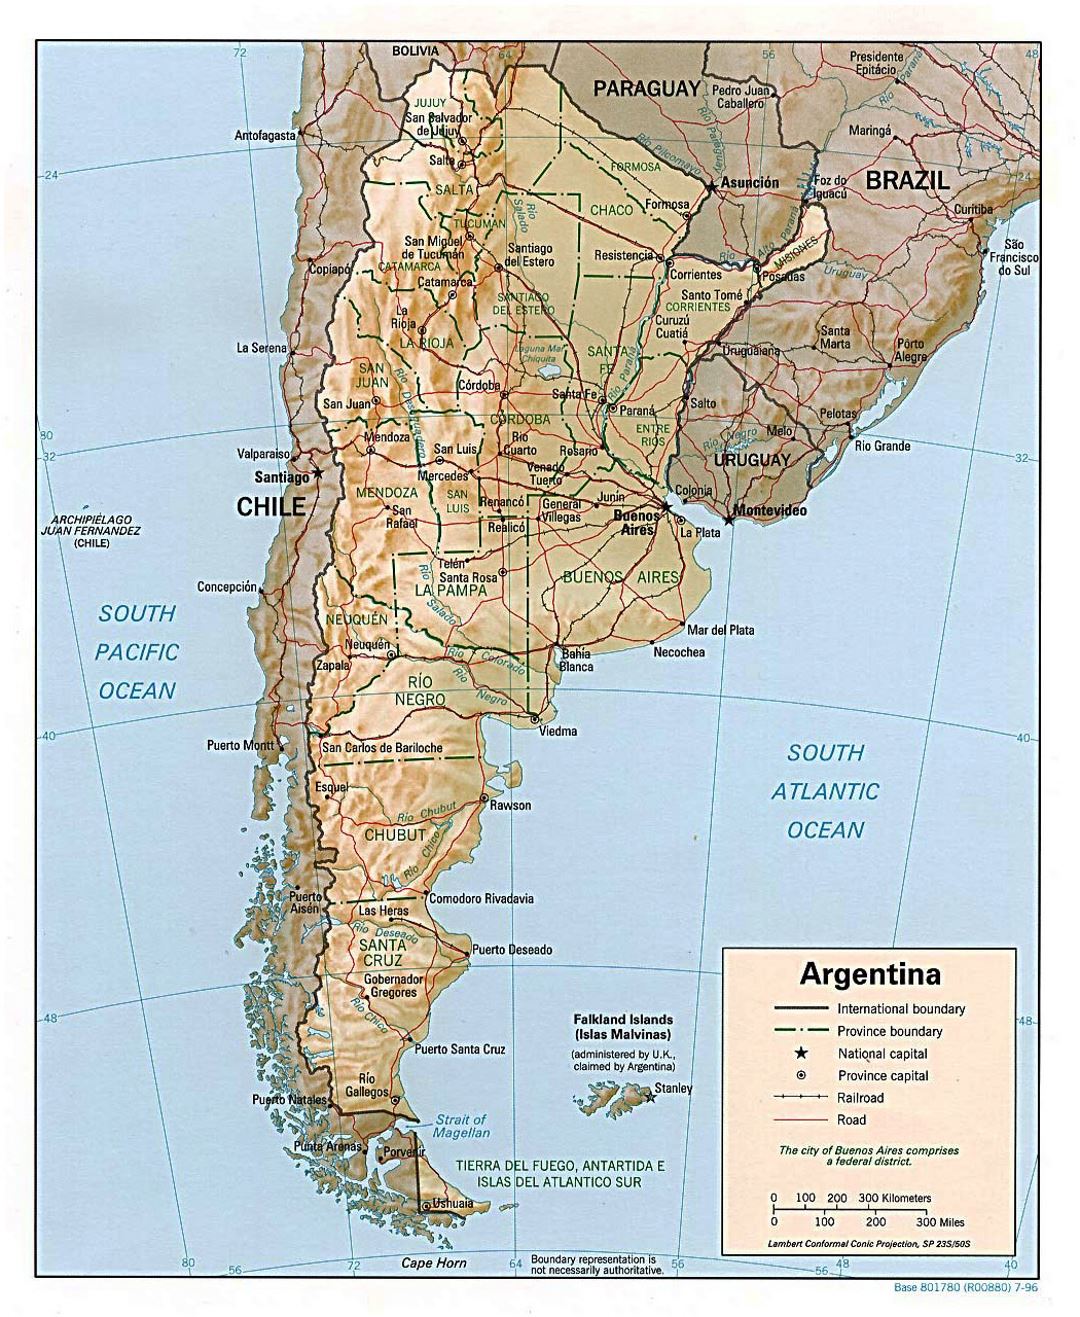 Grande mapa político y administrativo de Argentina con socorro, carreteras y principales ciudades - 1996